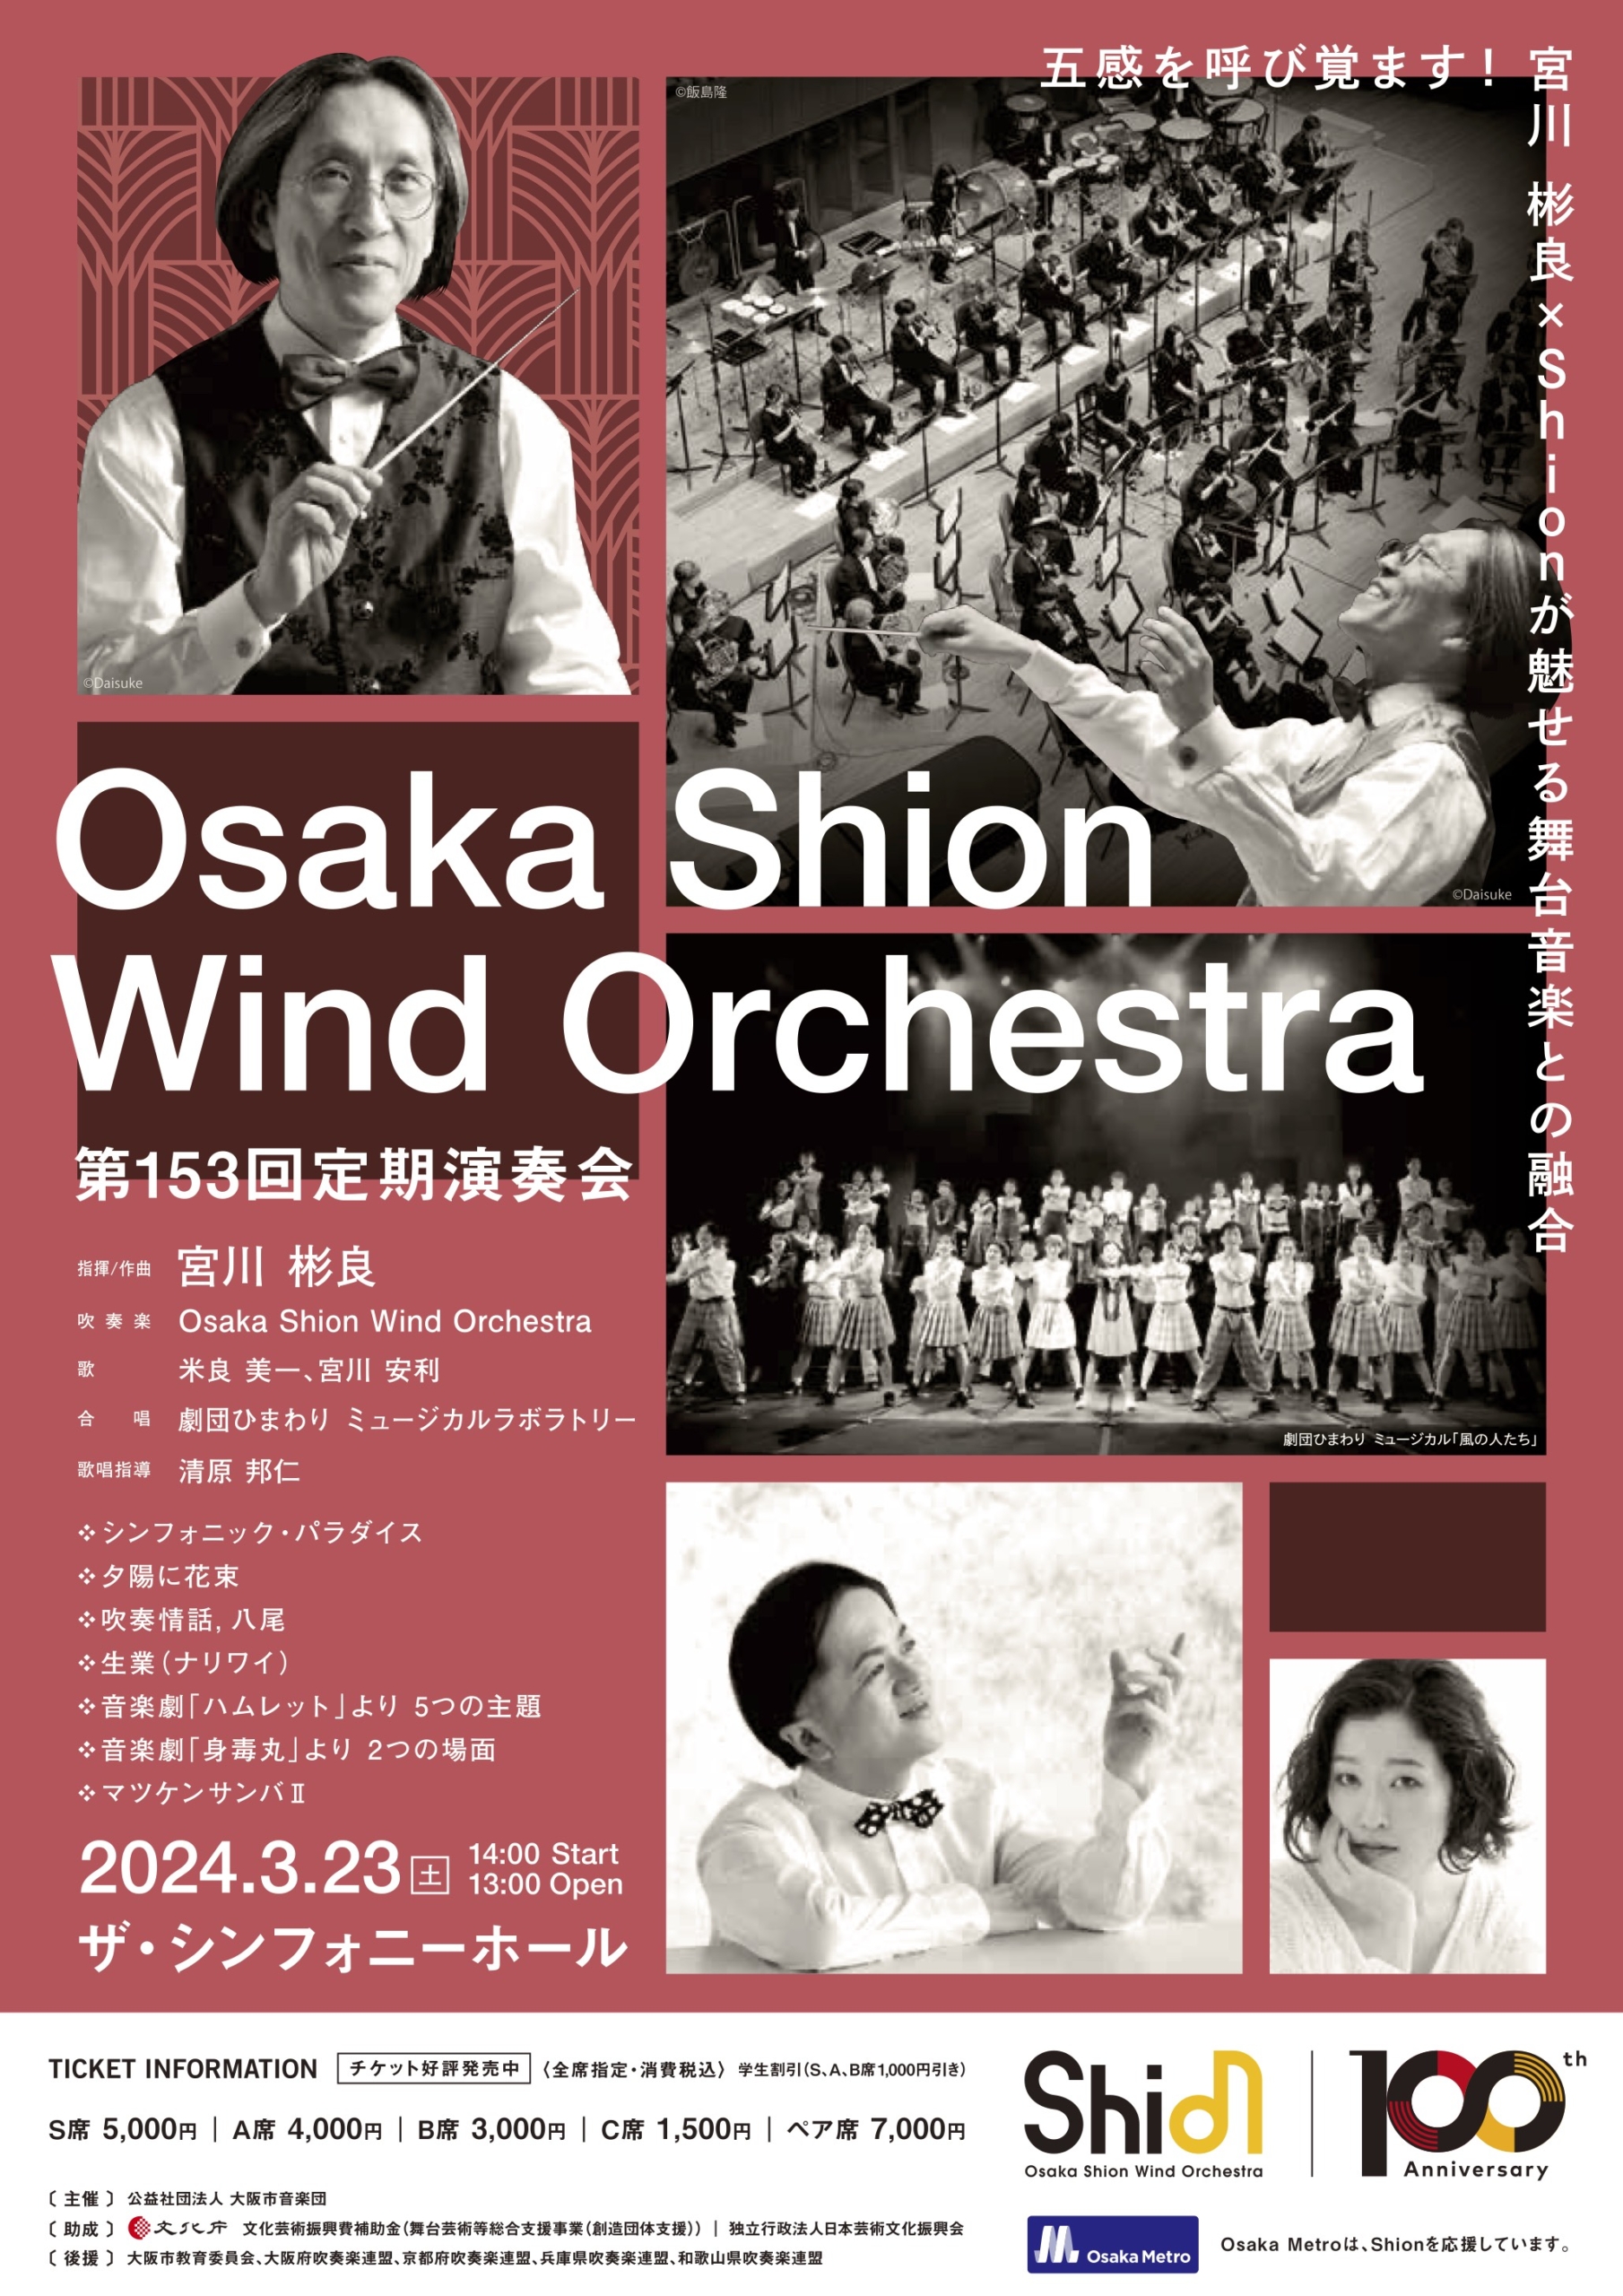 オオサカ・シオン・ウインド・オーケストラ第153回定期演奏会のフライヤー画像